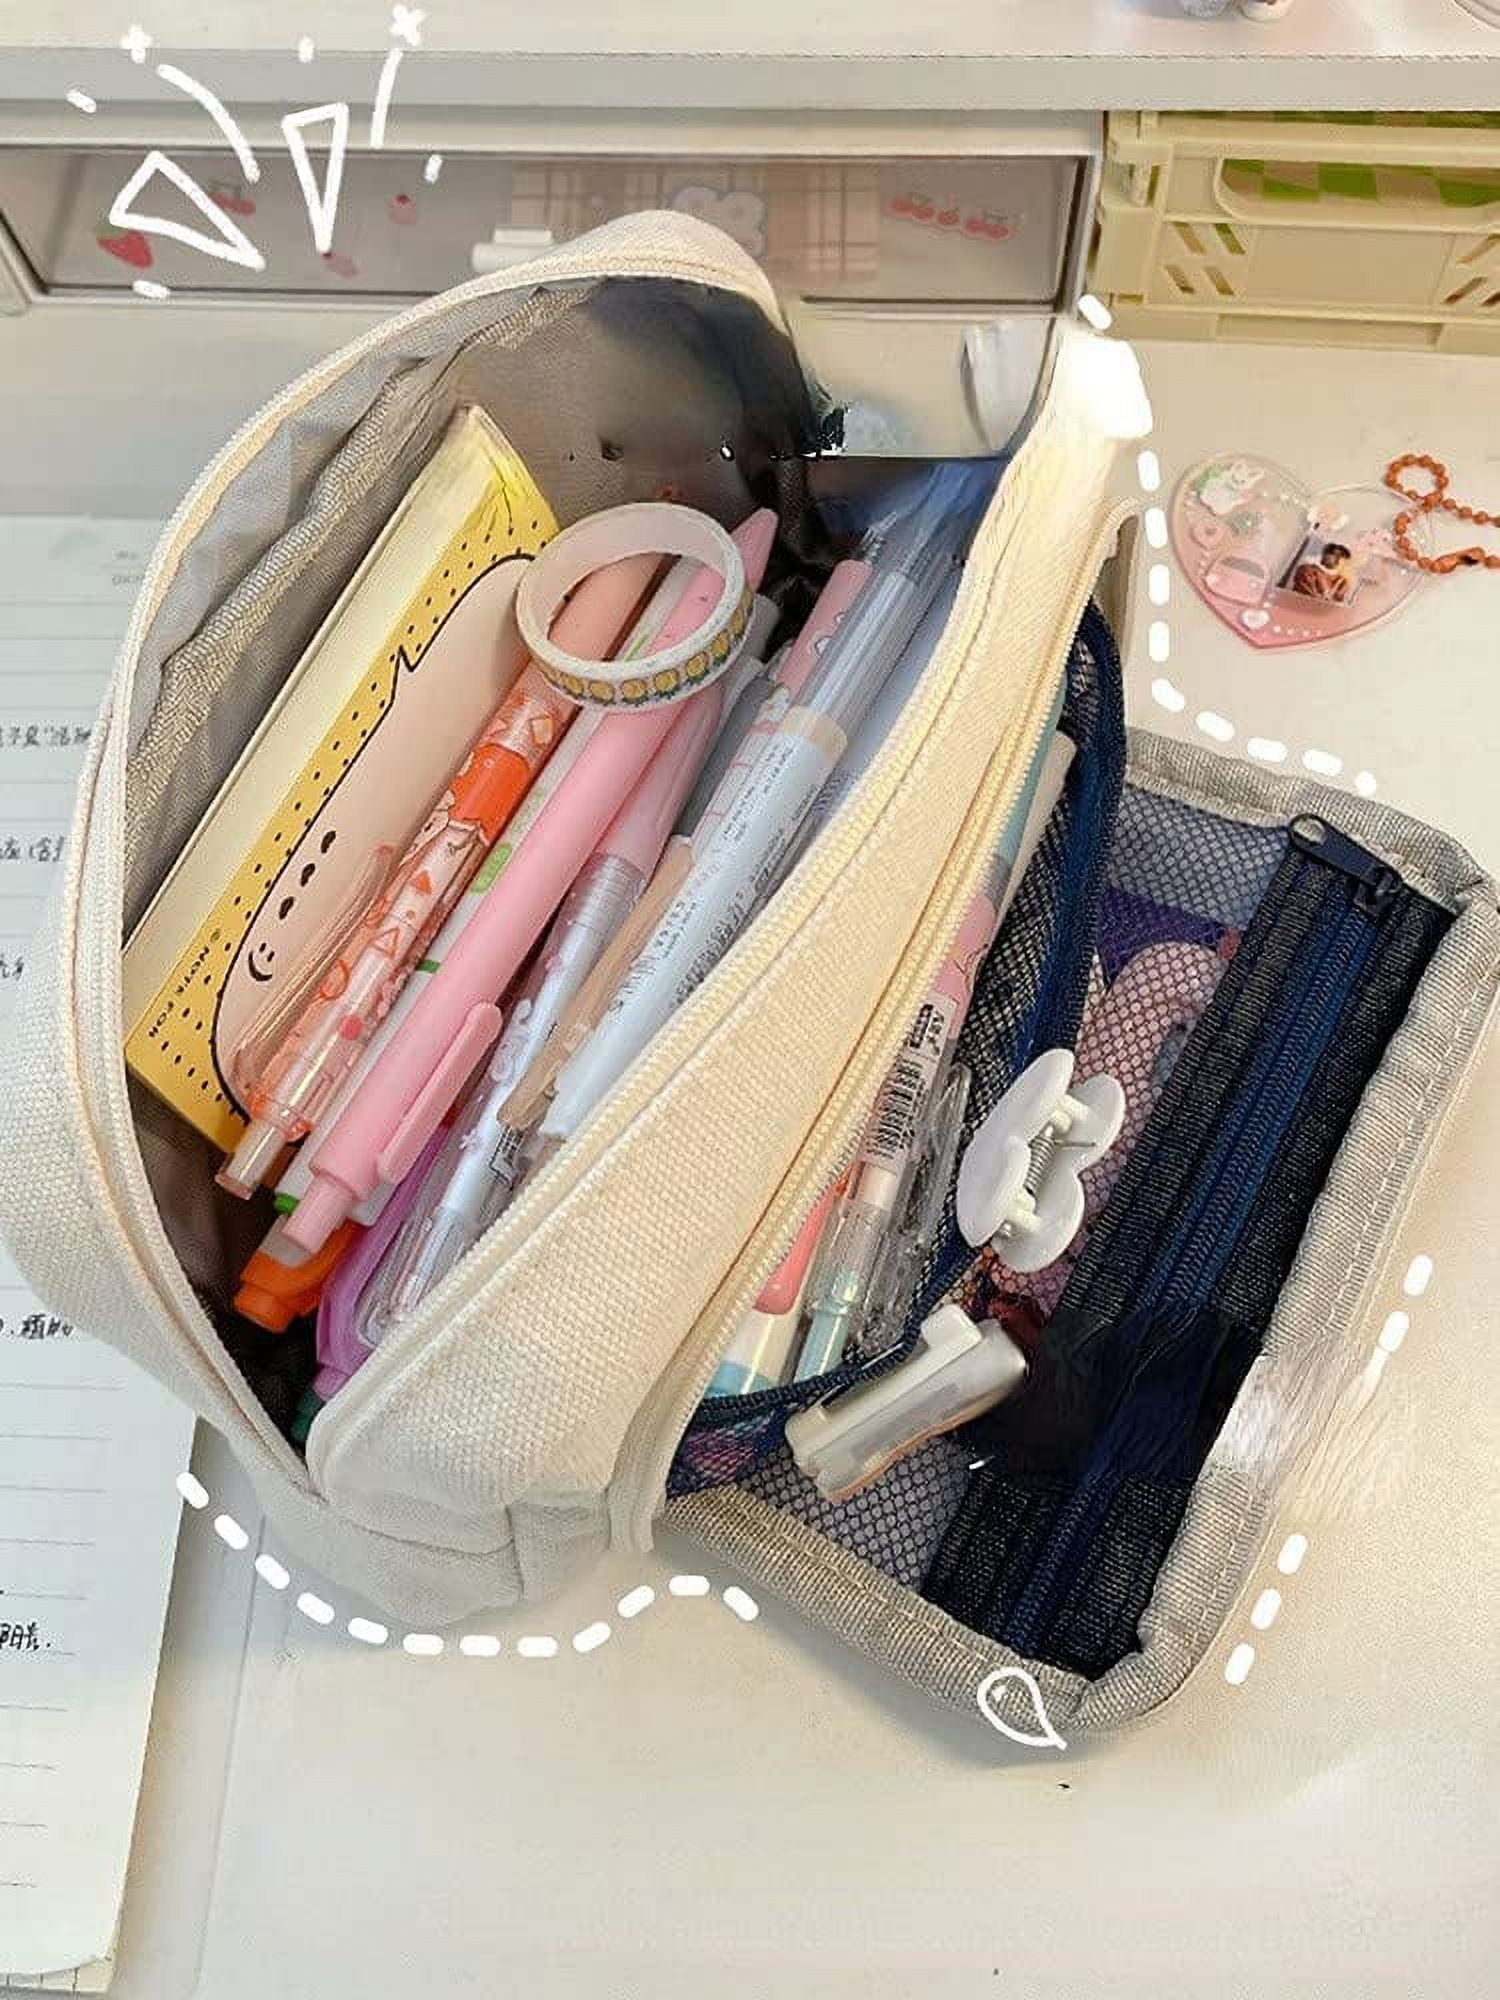 bangyoudaoo 2PCS Pencil Case Pencil Pouch Bag Pencil Case Square Plush Pencil  Case for Student Office,Pink(Pen case only) 